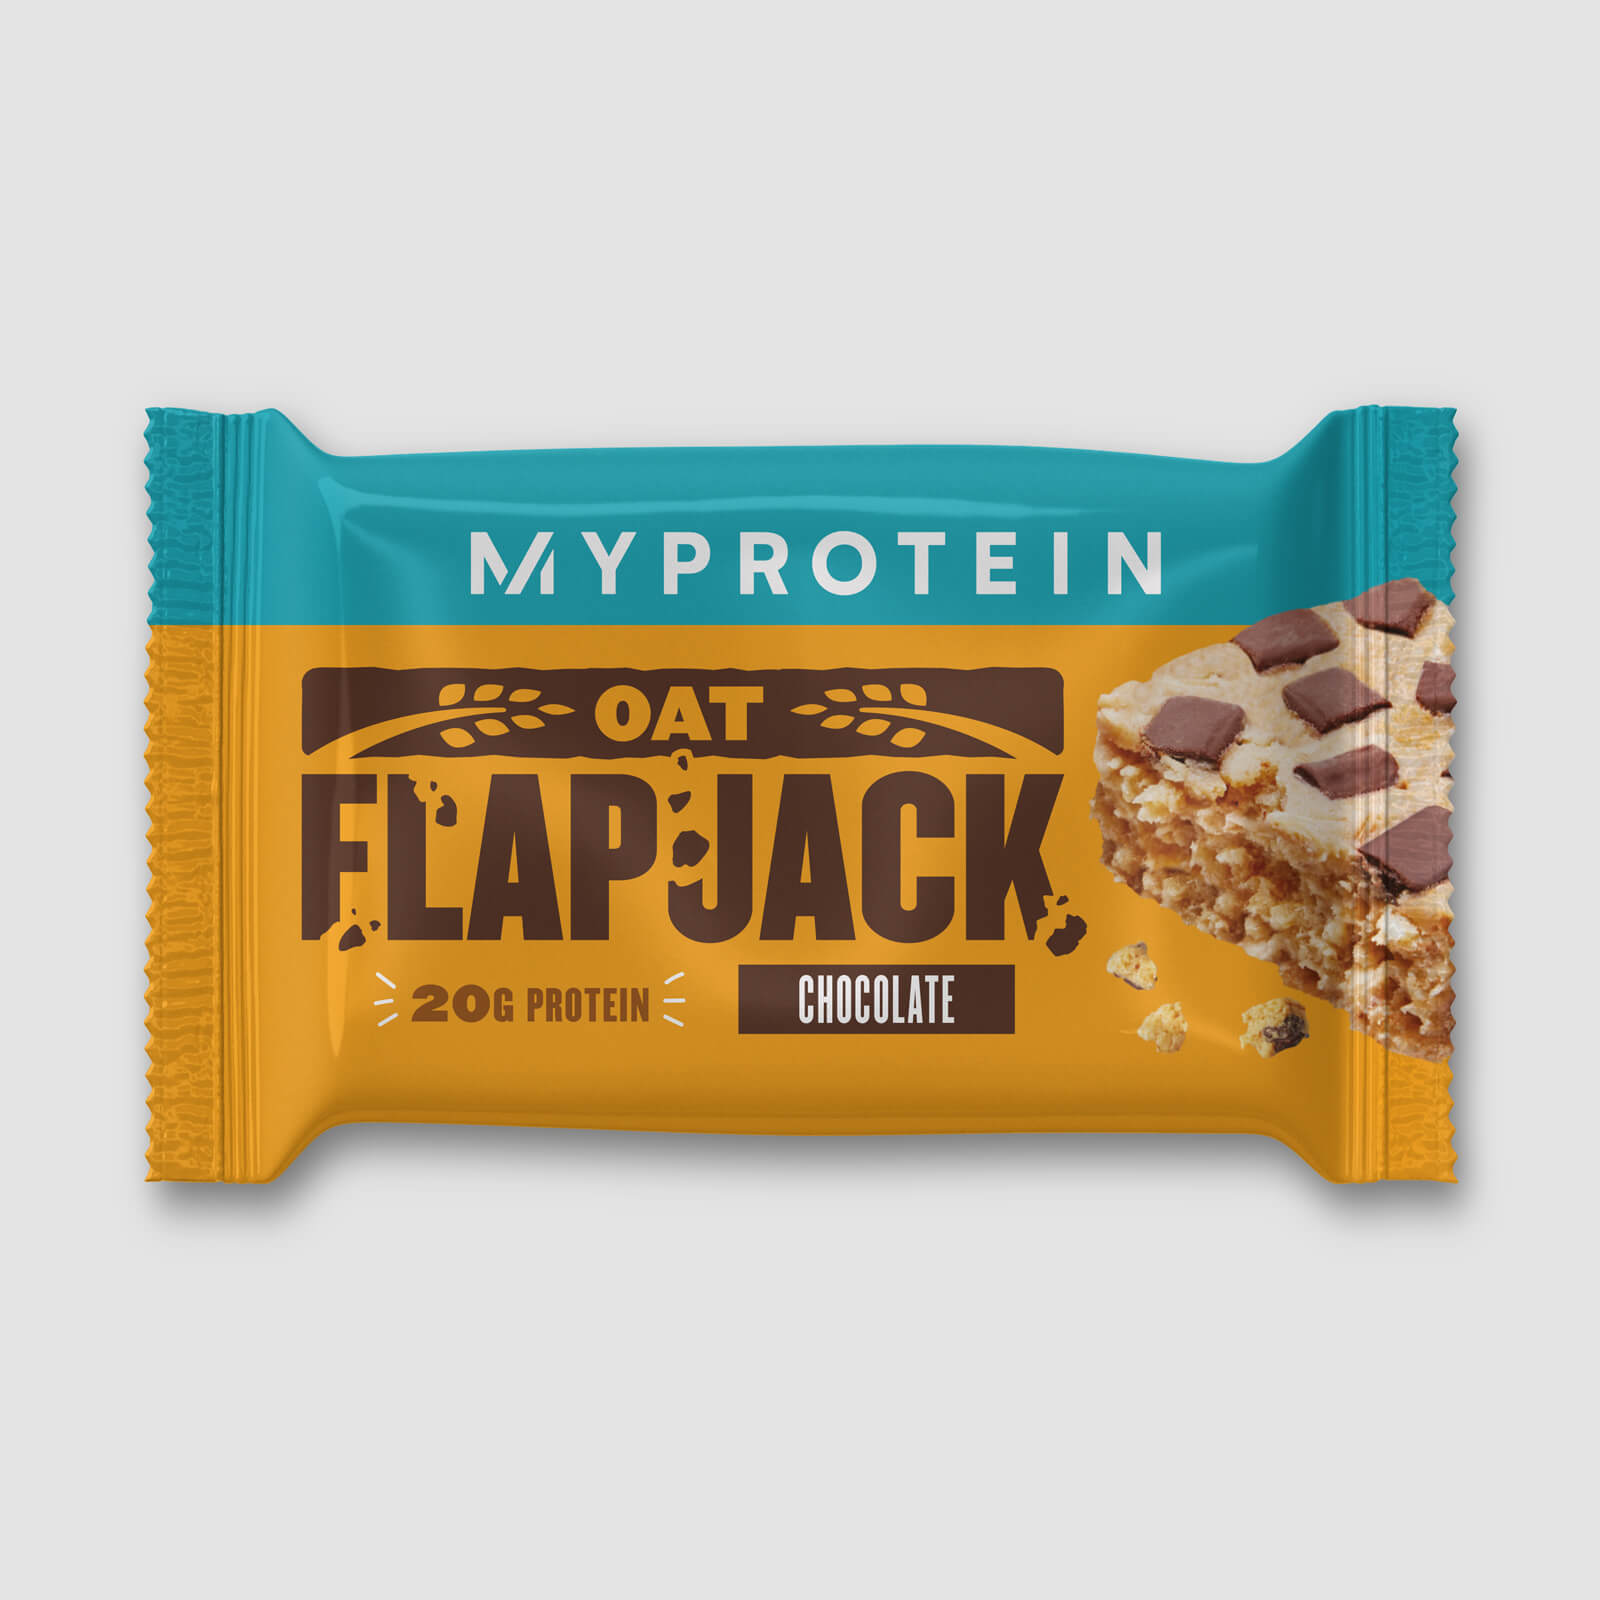 Flapjack protéiné ( Echantillon) - Chocolat